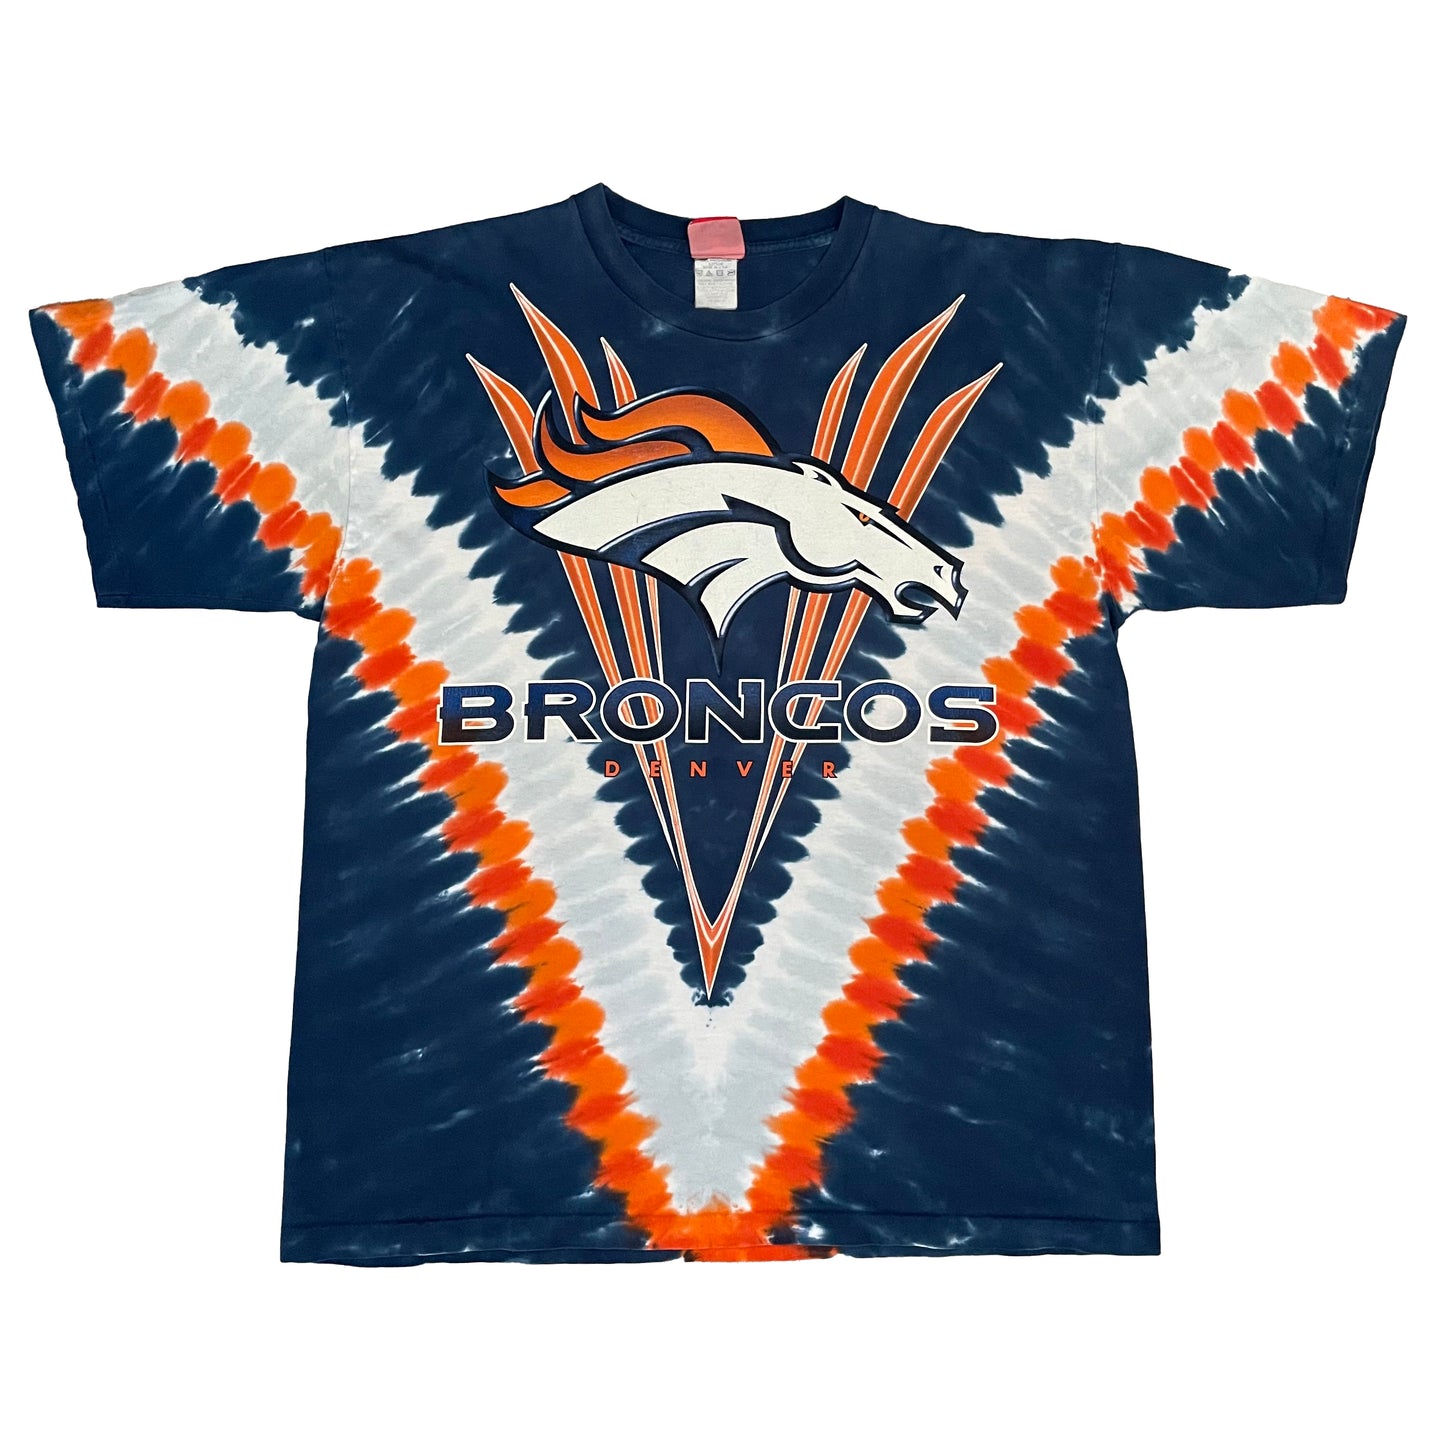 Denver Broncos tie dye shirt